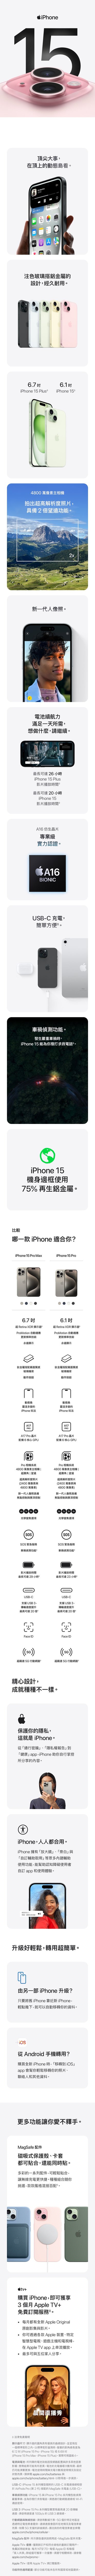 iPhone15yjƦbWʺAqFly MachineE޳Oregon StհѮ12RƷӤvlƧѿƶ StoreaϪ`fTݪ]pg[@6.7 6.1iPhone 15 Plus iPhone 15X4800 UDXWѪR׷Ӥ,2滷\s@NHӹqO@ѩһ,Q,~紵ڧTCp1u3,̪iF26 piPhone 15 Plusvɶ̪iF20 piPhone 15vɶCA16 ʹM~ŹO{ҡCA16BIONICUSB-C Rq,²KCtv+װ\CoY׮,iPhone 15 ରADϹqܡCiPhone 15بϥ75% A;TݡC@ iPhone AXA?iPhone 15 Pro MaxiPhone 15 Pro6.7 W Retina XDR ܾCProMotion ۰ʾA6.1 W Retina XDR ܾProMotion ۰ʾAsWv޳NûܧsWv޳NûgݷftPgݷftPIIʧ@sʧ@sʺAqʺAqFhܪFhܪiPhone kiPhone kA17PROA17 Pro t6֤ GPUA17PROA17 Pro t 6 ֤ GPUPro t4800 UD۾ W  滷WѪR׷Ӥ2400 UPPro ۾t4800 UD۾ Ws  滷WѪR׷Ӥ2400 UP4800U4800Us@NHӨƵJIP`s@NHӨƵJIP`.5x 1x2x5xܵJﶵ.5x 1x2x 3xܵJﶵSOSSOSSOSASOSAȨװ\Cװ\Cvɶvɶ̪iF29 pɳ̪iF23 pUSB-C䴩USB3,ǿt״ɳ̰iF20 CUSB-C䴩USB 3,ǿt״ɳ̰iF20 Face IDFace ID(())Wtt5Gʺ5G(())Wtt5Gʺ߳]p,Nغؤ@ˡCO@Ap,oNO iPhoneCuqK_Bupvivudvapp,iPhone UAۦxҤɪeCiPhone,HHXΡCiPhone ֦ujvBuǥաvPuۭqUΡvhUΥ\,U{êϥΪ̨Ϧۭqapp MϥCLkH,ۤ@Y¦vCɯŦnP,ζW²Cѥt@iPhone ɯ?unN iPhone as iPhone,IXU,NiH۰ʲAơCq Android ?ʶRs iPhone ,u iOSvapp |APAӤBpHMLơCh\ARCMagSafe tϧlO@ߡBdMiKX,ٯPɶKChm@tCt,iPKX,LuRqֱCغزզXHAD,ڴڭVfʰtC+ʶR iPhone,Yi3 Apple TV+KOqAȡCC볣s Apple OriginalмvPvCAizLU Apple ˸mBSwzqBCDMq,bApple TV app WyC̦hiPaHɡCᶡqkߧKdnܾؤo:ܾꨤ㦳uu]p,çe{b@ӼзǯxΤCHзǯxζq,ù6.12 (iPhone(iPhoneq15Pro﨤u׬15 ProBiPhone 15)6.69MaxBiPhone 15 Plus)CڥiϸpCPq:ҦC|qį]tmP\hL]vT;ڵGi঳ҮtCqRq`Ʀ,̲פiභn󴫡CqϥήɶPRqƵϥαpγ]wAӲаѻPapple.Capple.com/tw/batteries\com/tw/iphone/battery.html,Hoi@BTCUSB-C:iPhone 15tCHUSB-C Rqsuۮe AirPods Pro (2N)ftMagSafe Rq (USB-C)Cװ\:iPhone 15 PiPhone 15 Pro tC఻Y,ìAqܨϥΡCWi-FiDϹqܡCzLʺsuUSB3:iPhone15t,ϥγt׹FPro tCn{̰F20ǿ10Gb/s  USB 3suCʺPLu޳N:ϥμƾڤסC5GȩSwaϨózLSwqH~̴ѡCsut׷|]ҦbapΦӲCp 5G 䴩ԲӸT,ЬߧAqapple.com/tw/iphone/cellularCqH~̫H~̨ðѾ\MagSafe t:ҥCȨѻγ~CMagSafe ttCApple TV+uf:ȭsqMŦX檺sq\ΤCKOեε,CNT$170CCApple IDMCӡuaH@ɡvsնȥiɤ@ufCu,аѾ\apple.com/tw/promoCApple TV+:ϥApple TV+q\AȡC\SAνd:\iॼbҦaΦaϴѡC2x